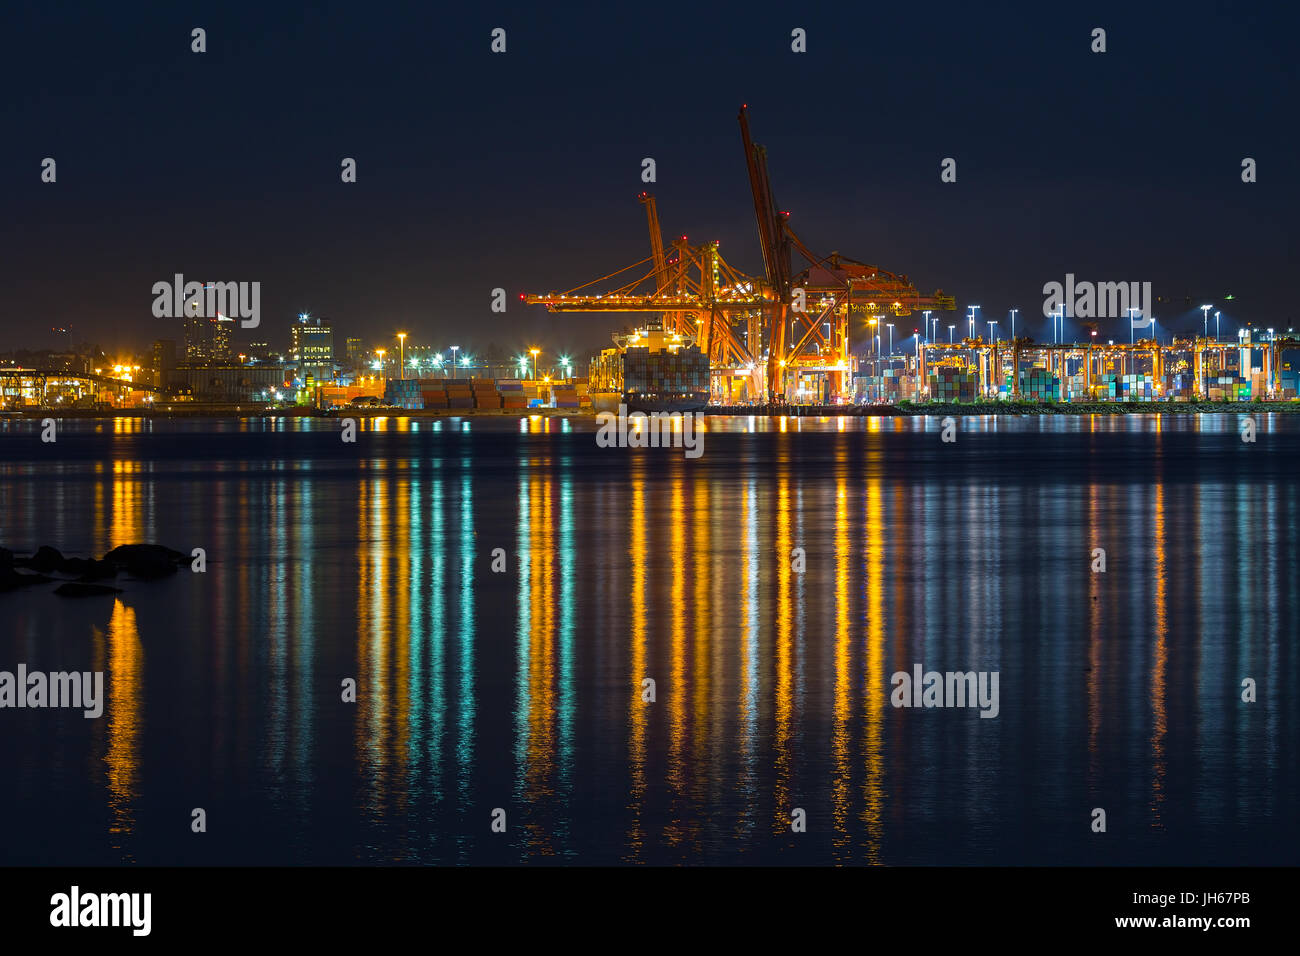 Hafen von Vancouver British Columbia Kanada während der blauen Stunde Nacht Abend Stockfoto